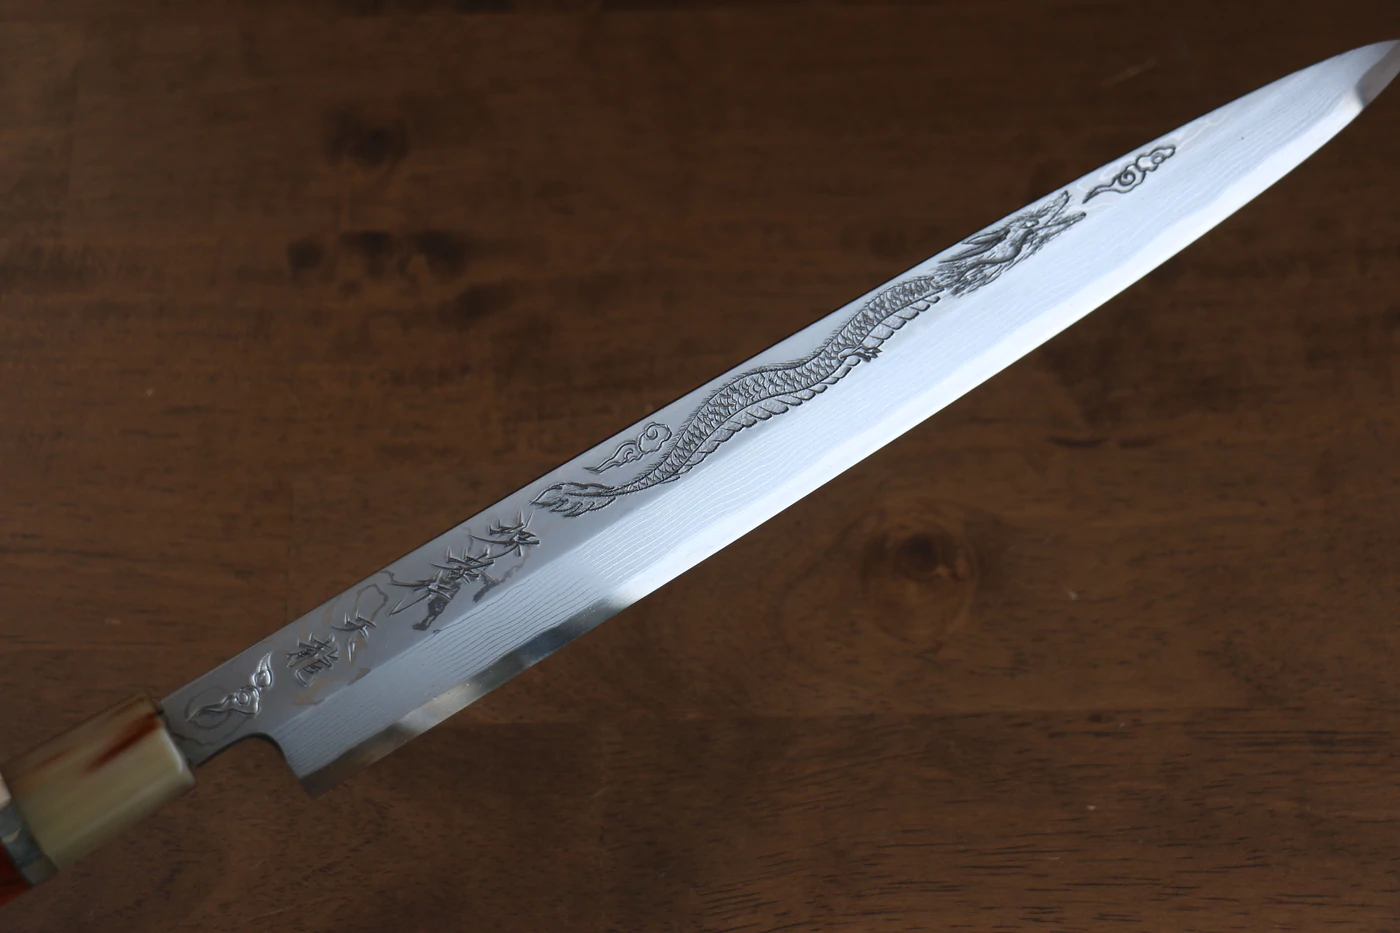 Marke Sakai Takayuki Thien Long Uzushio-Serie, Nr. 2 blauer Stahl mit geschnitzter Drachenform, Yanagiba 300 mm Spezial-Shashimi-Fischmesser, Messergriff aus rotem Ebenholz, inklusive Messerscheide, hochwertiges echtes japanisches Messer 5